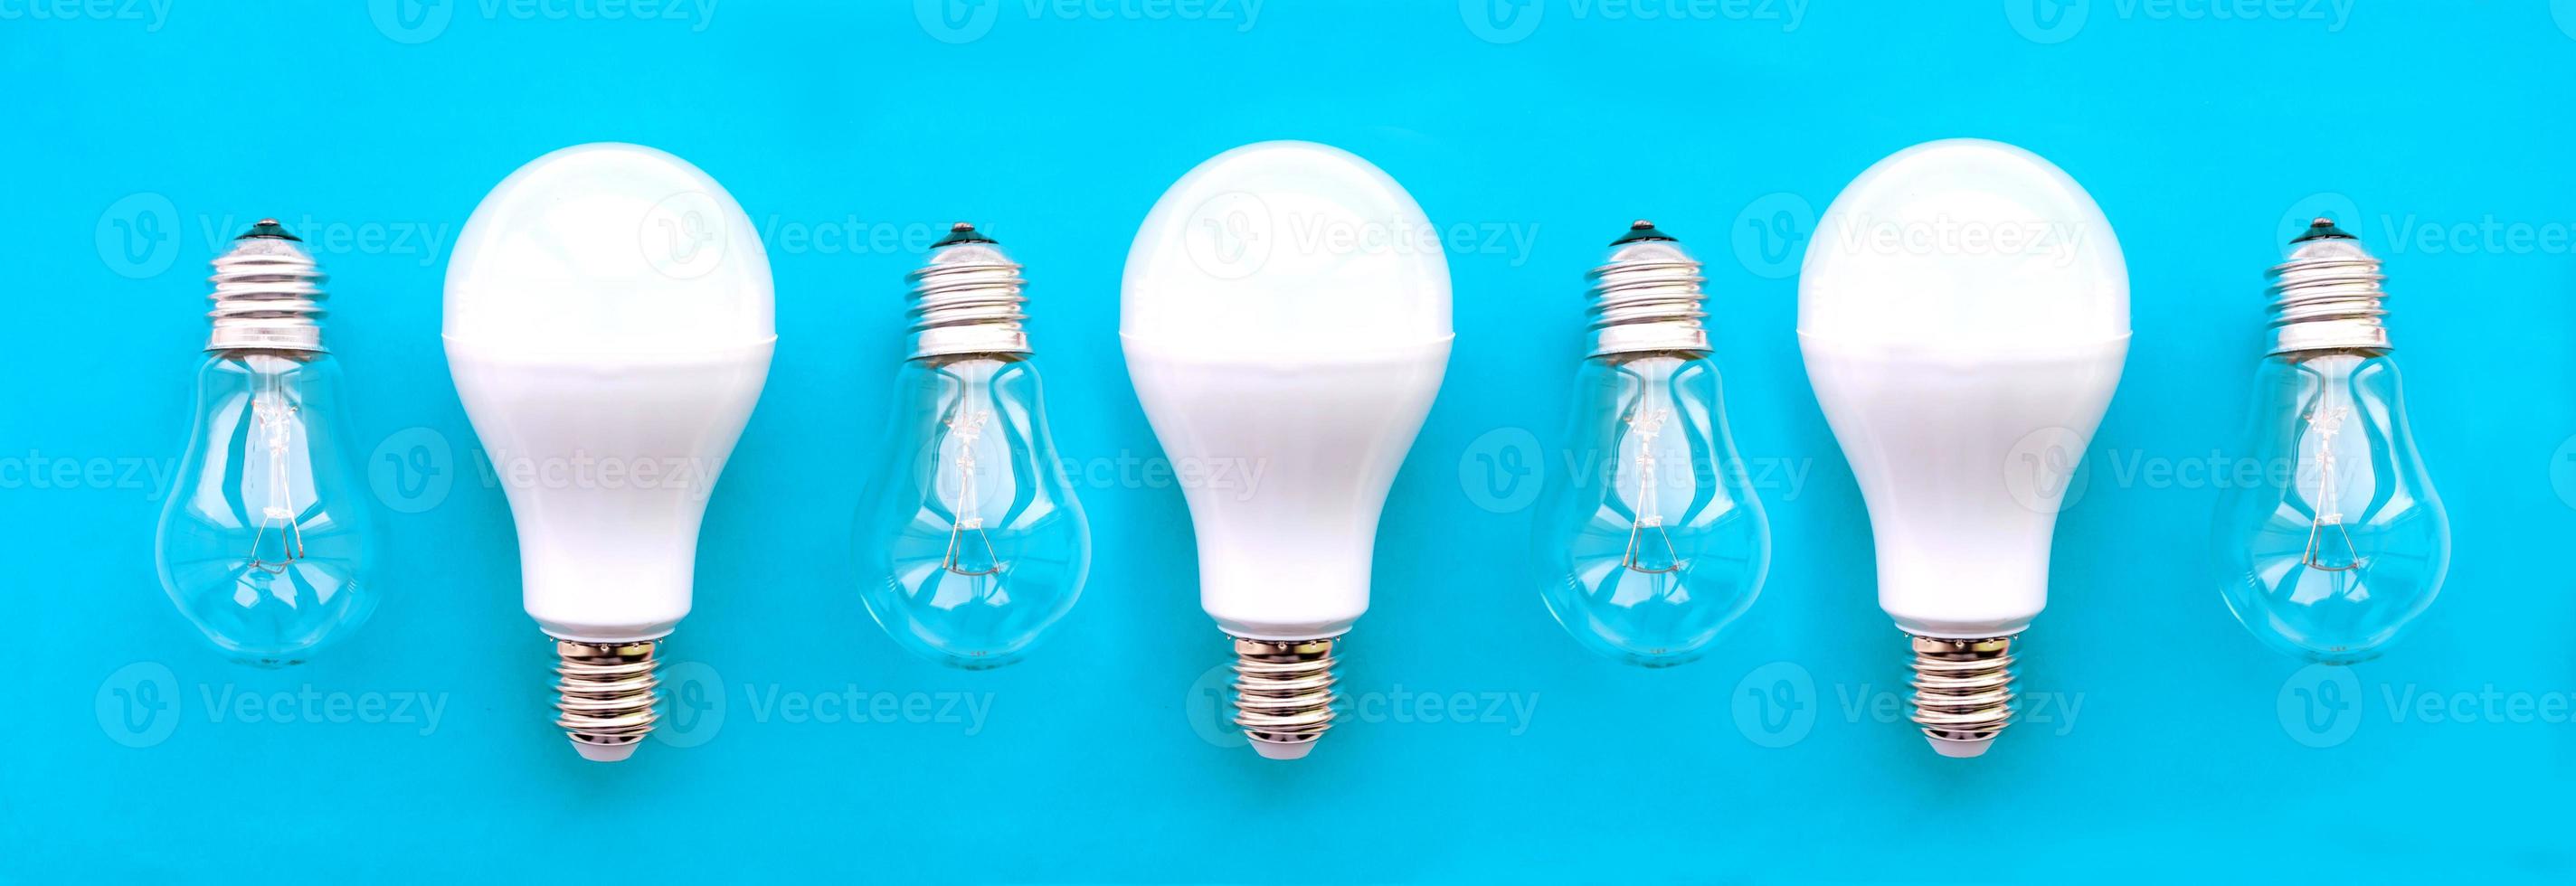 lâmpadas economizadoras de energia com lâmpadas incandescentes em uma fileira em um fundo azul. o conceito de economia de energia. foto